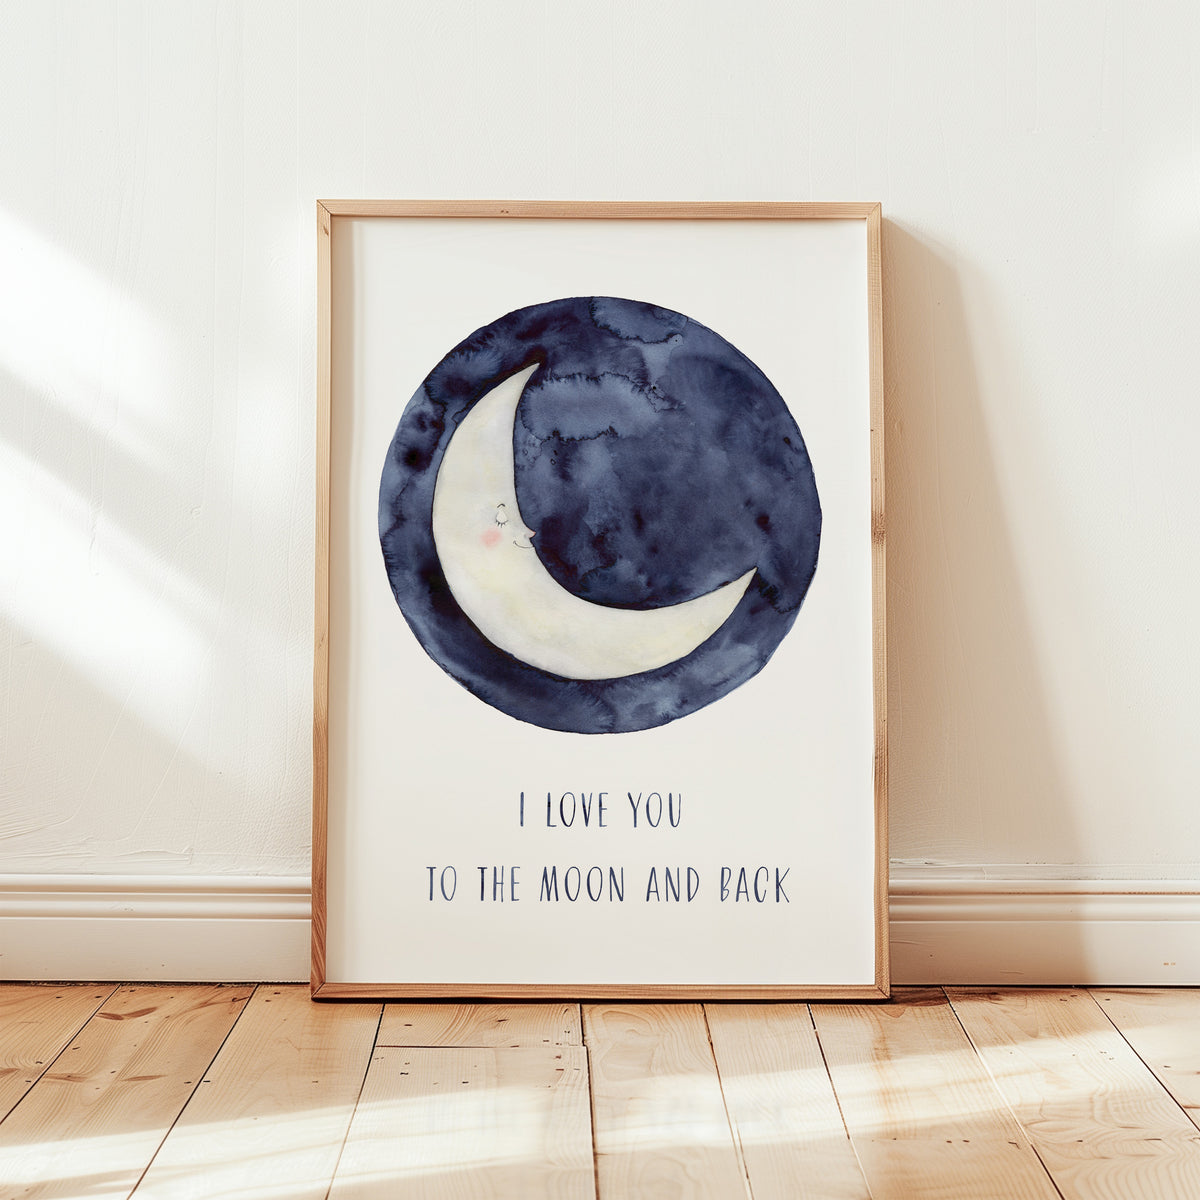 Kunstdruck - To the moon